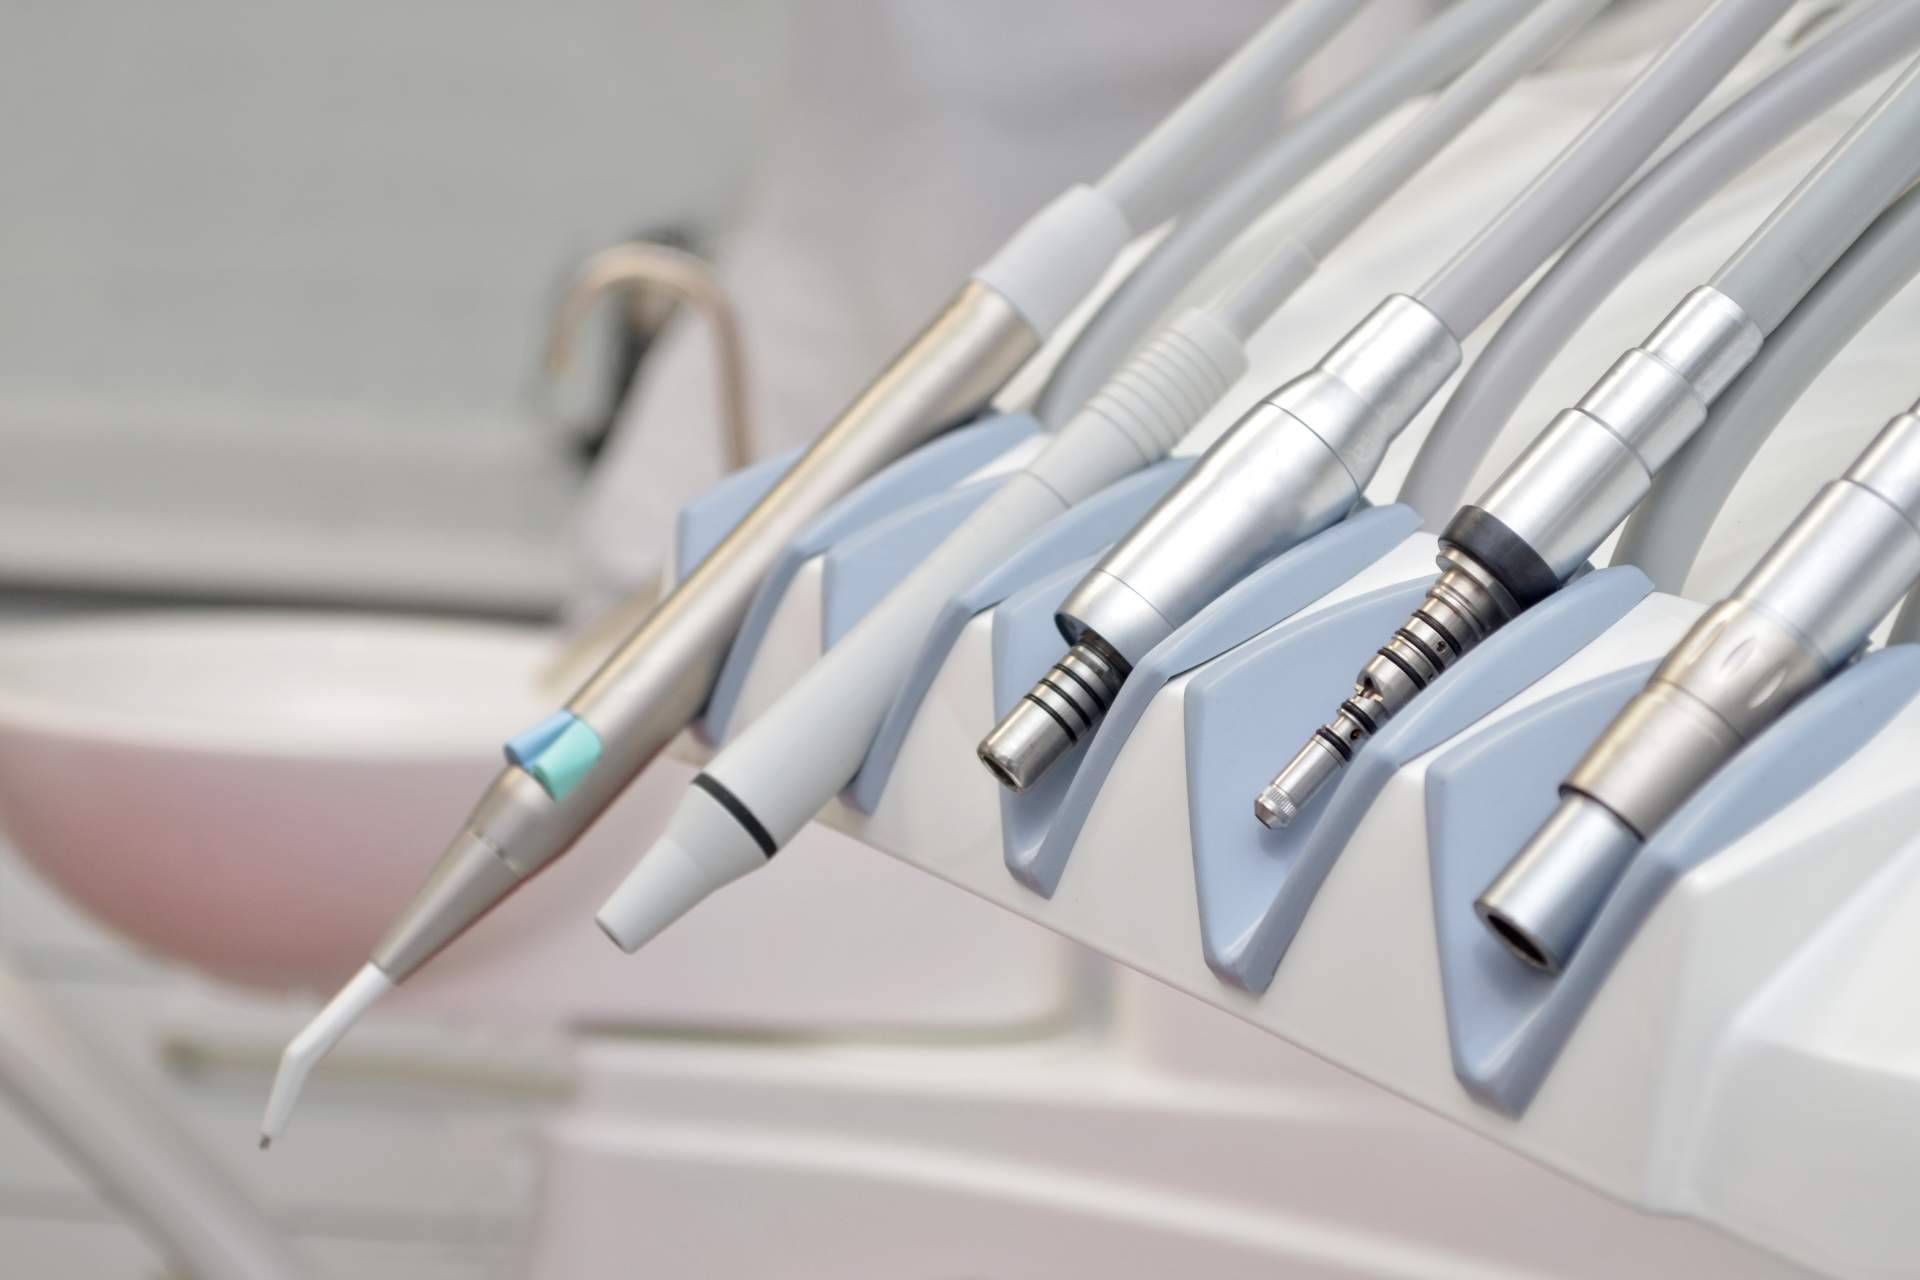 Precisión Médica Dental ofrece los MK-dent kits con turbinas dentales, ideales para estudiantes de odontología